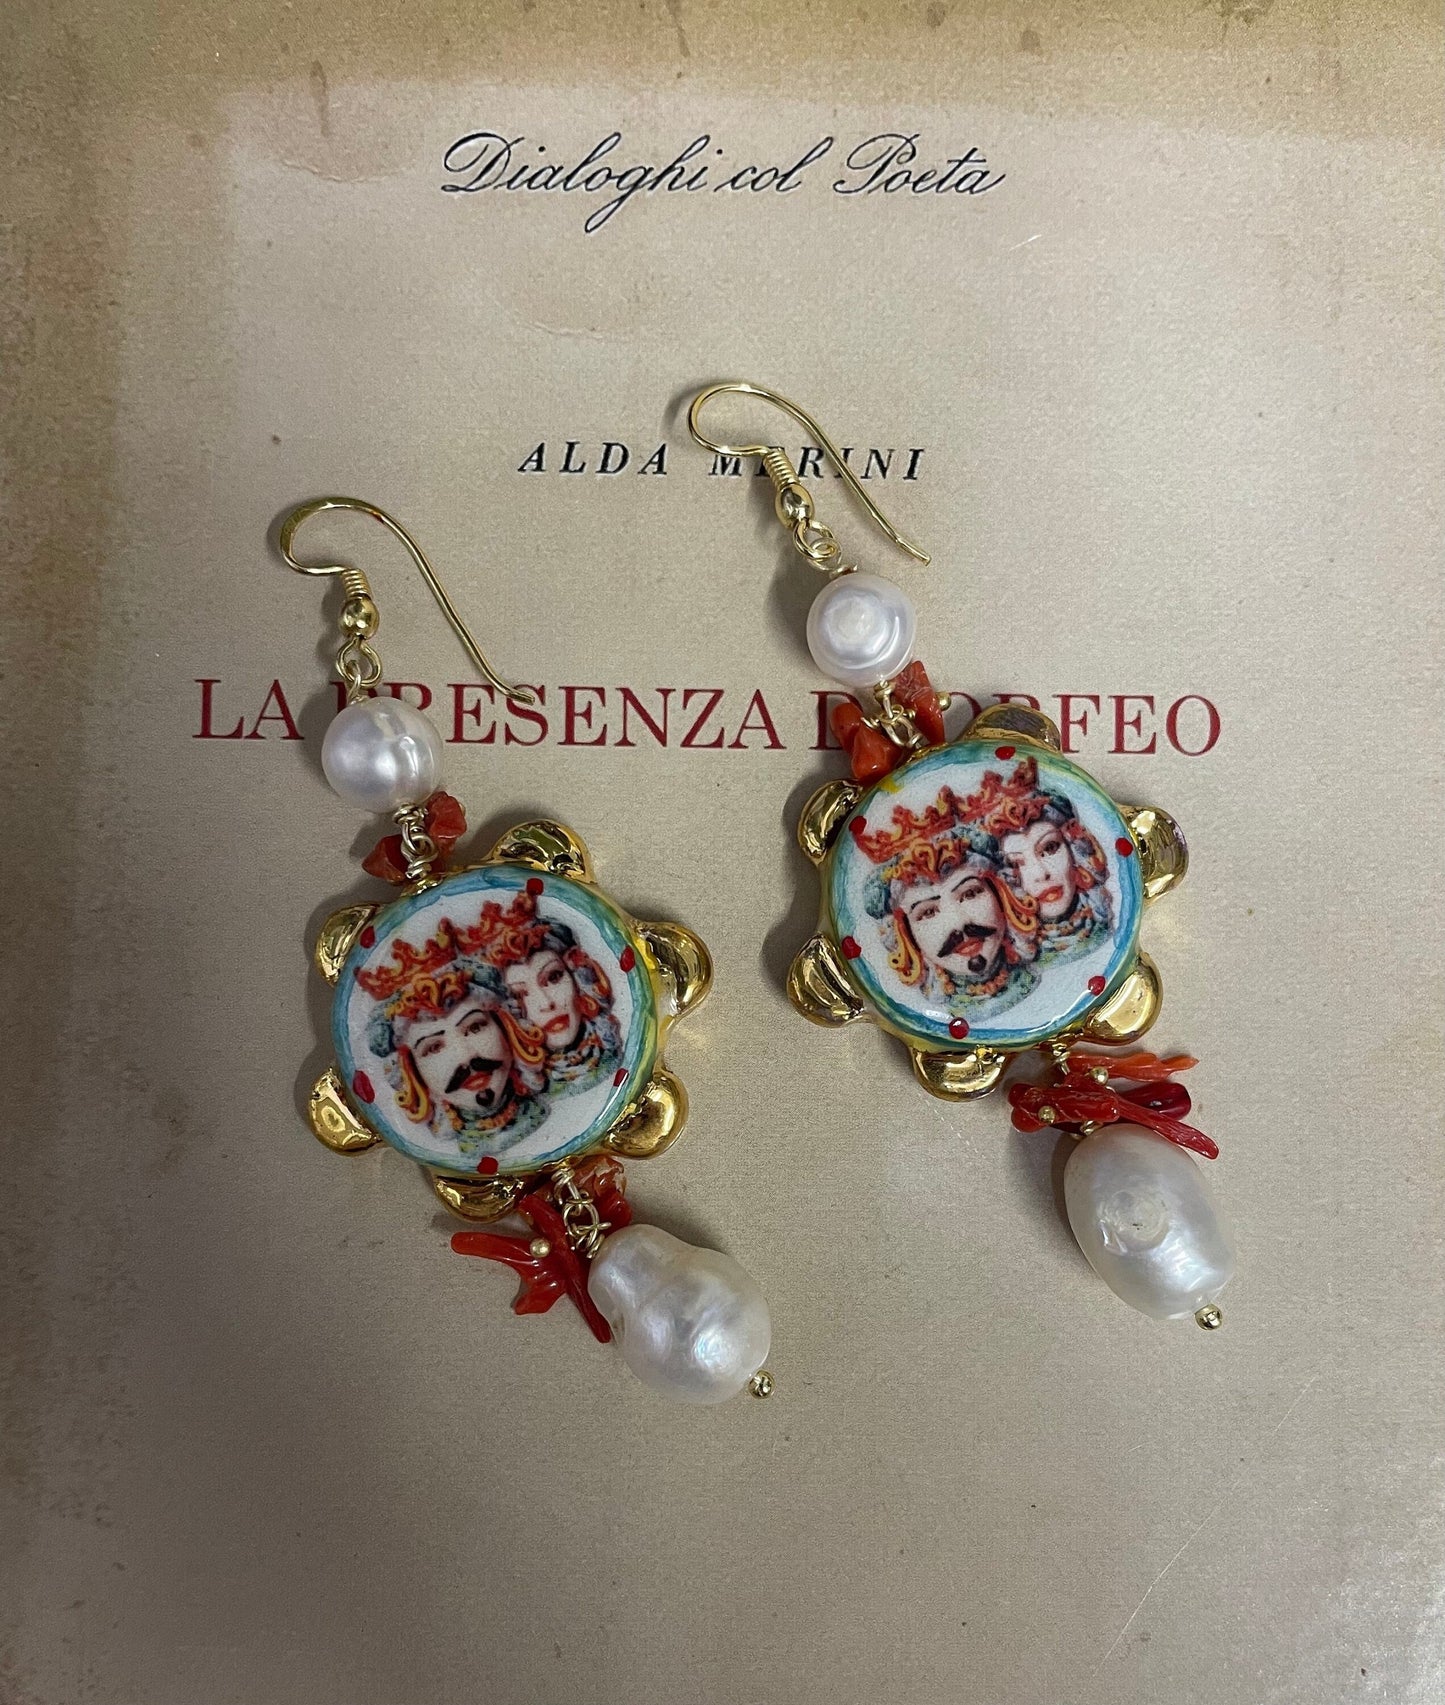 Orecchini siciliani con tamburelli in ceramica di Caltagirone dipinta a mano, perle barocche e chips di coralli regalo per lei.§